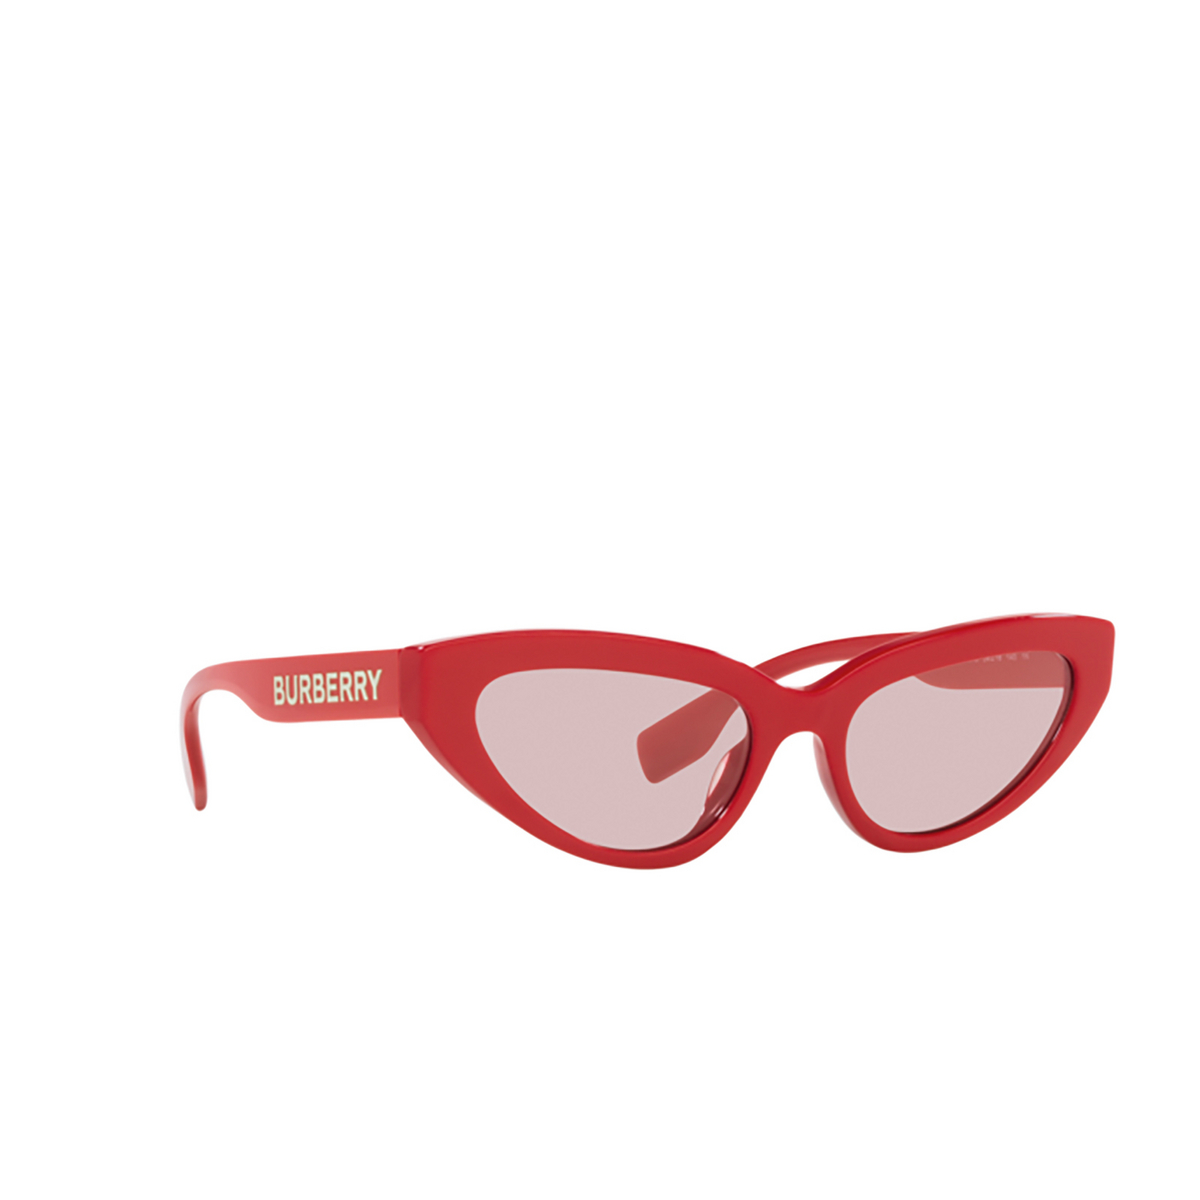 Burberry DEBBIE Sunglasses 3919/5 Red - three-quarters view